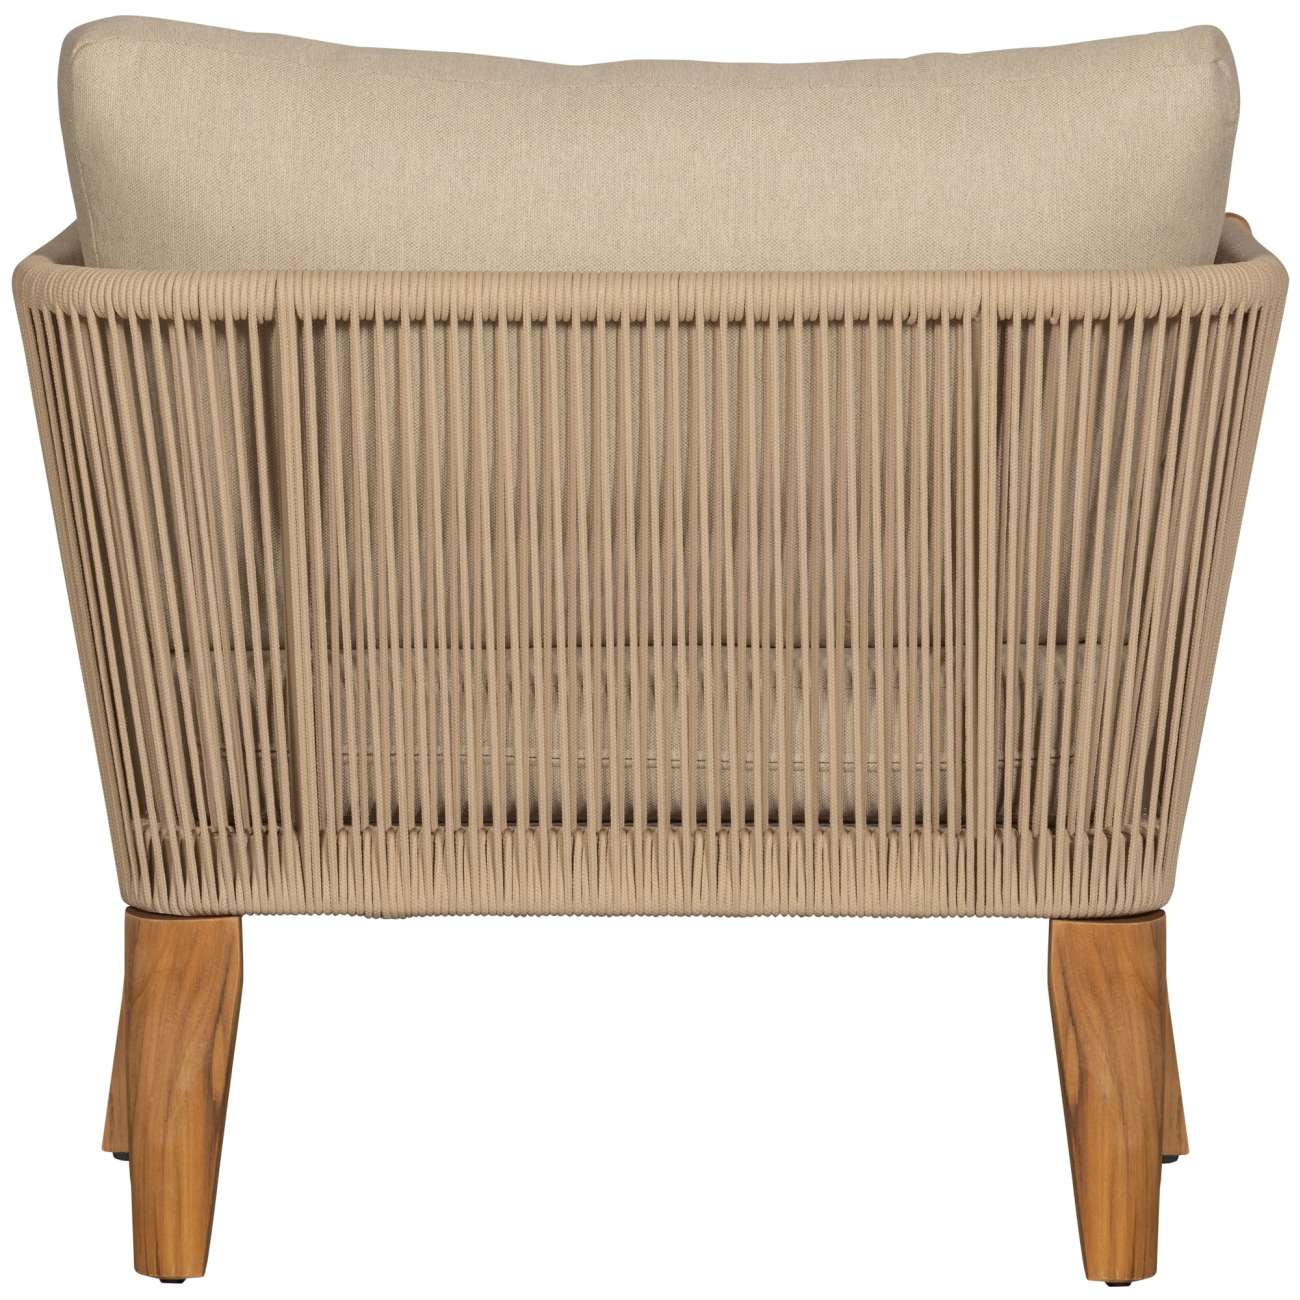 Der Gartensessel San Remo überzeugt mit seinem modernen Design. Gefertigt wurde er aus Stoff, welcher einen Sand Farbton besitzt. Das Gestell ist aus Teakholz und hat eine natürliche Farbe. Der Sessel besitzt eine Sitzhöhe von 41 cm.